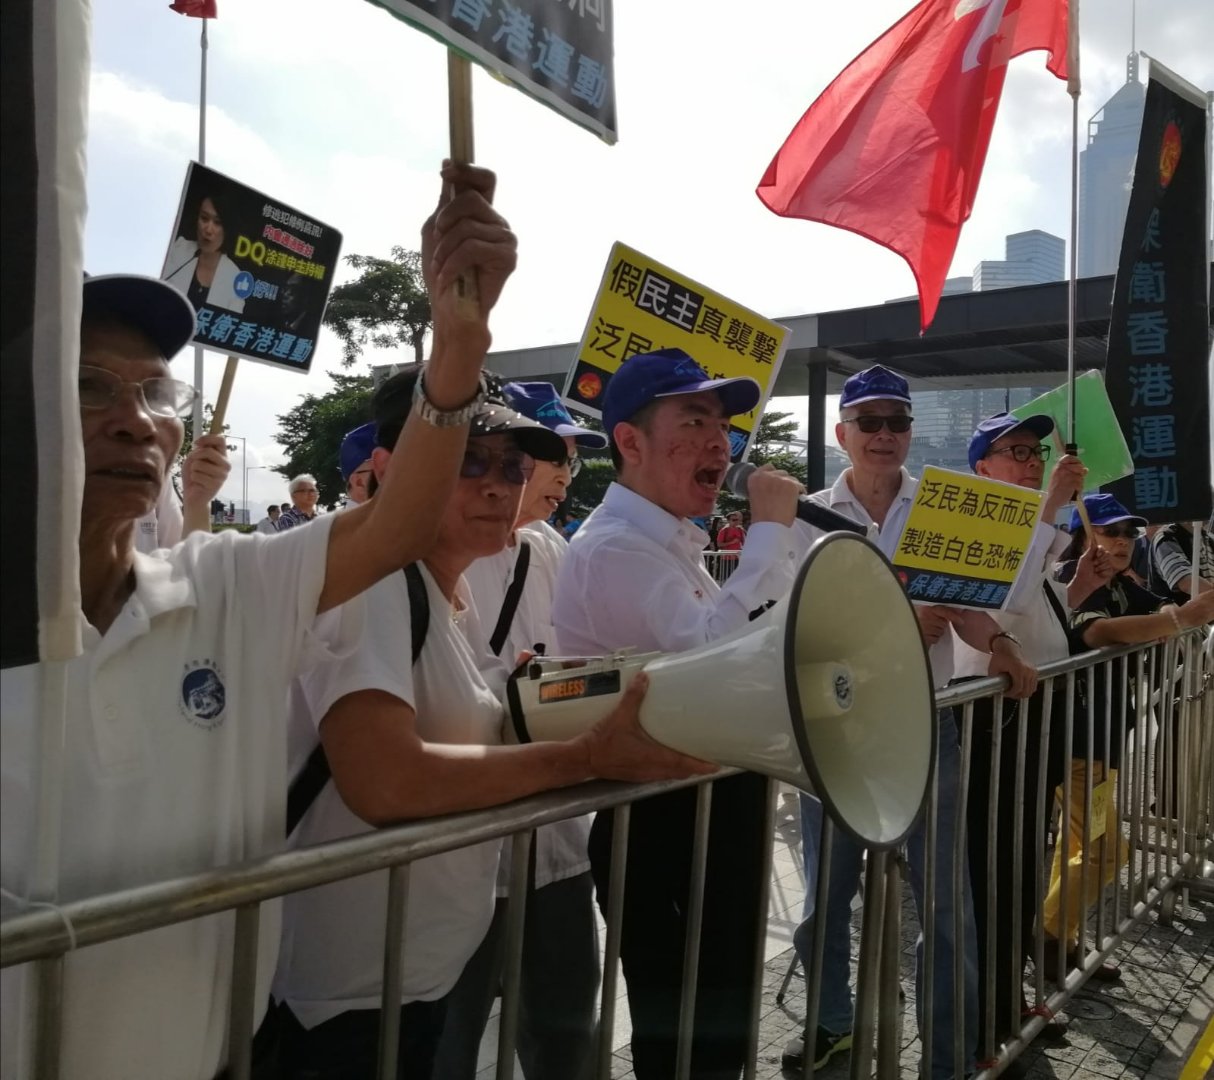 保衛香港運動 主辦「支持修逃犯例、 譴責議會暴力」集會